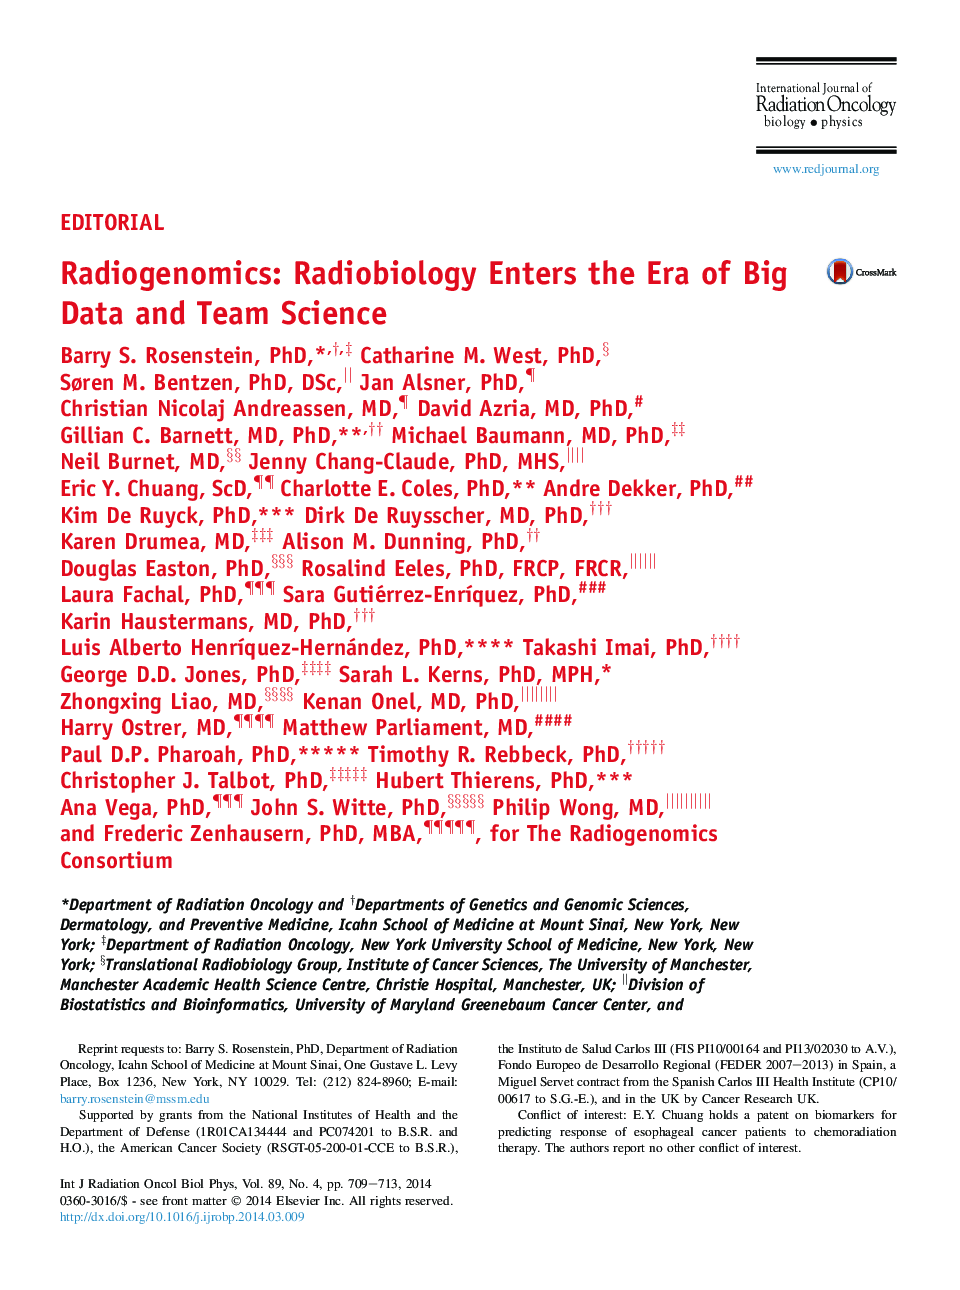 رادیوژنومیک: رادیوبیولوژی وارد دوره های داده های بزرگ و علوم تیمی می شود 